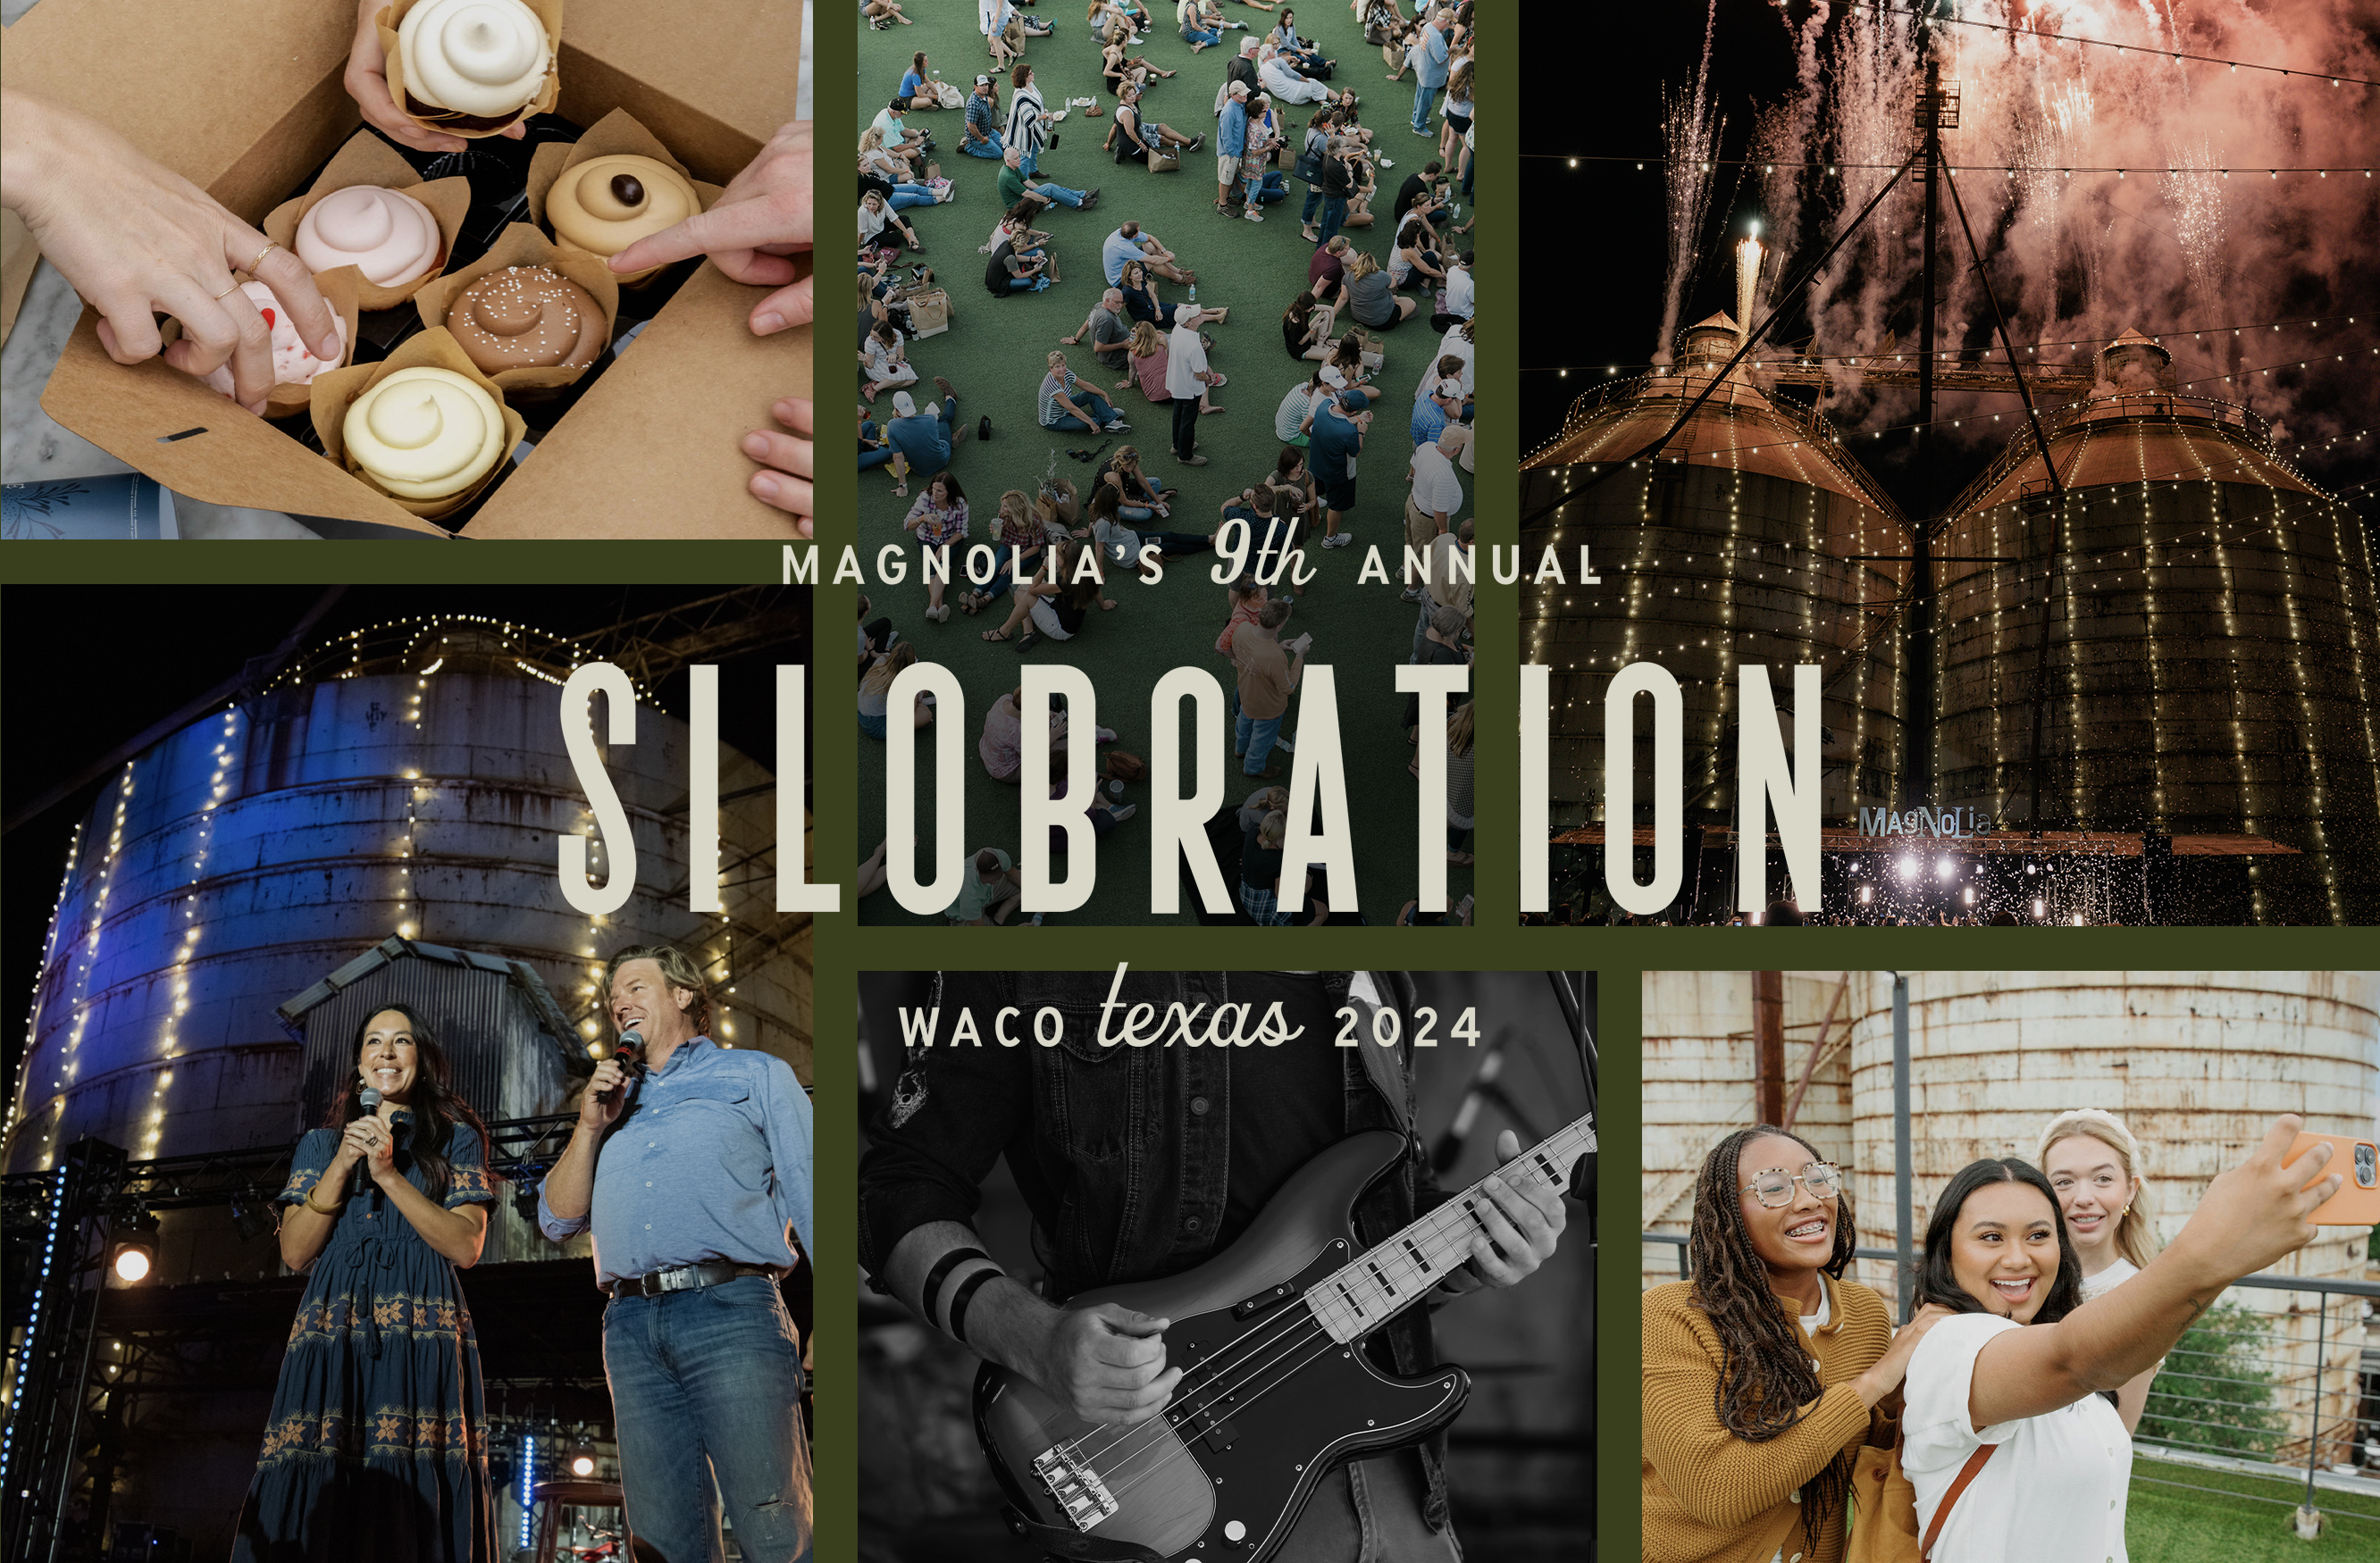 Magnolia's 9th Annual Silobration, Waco, Texas 2024